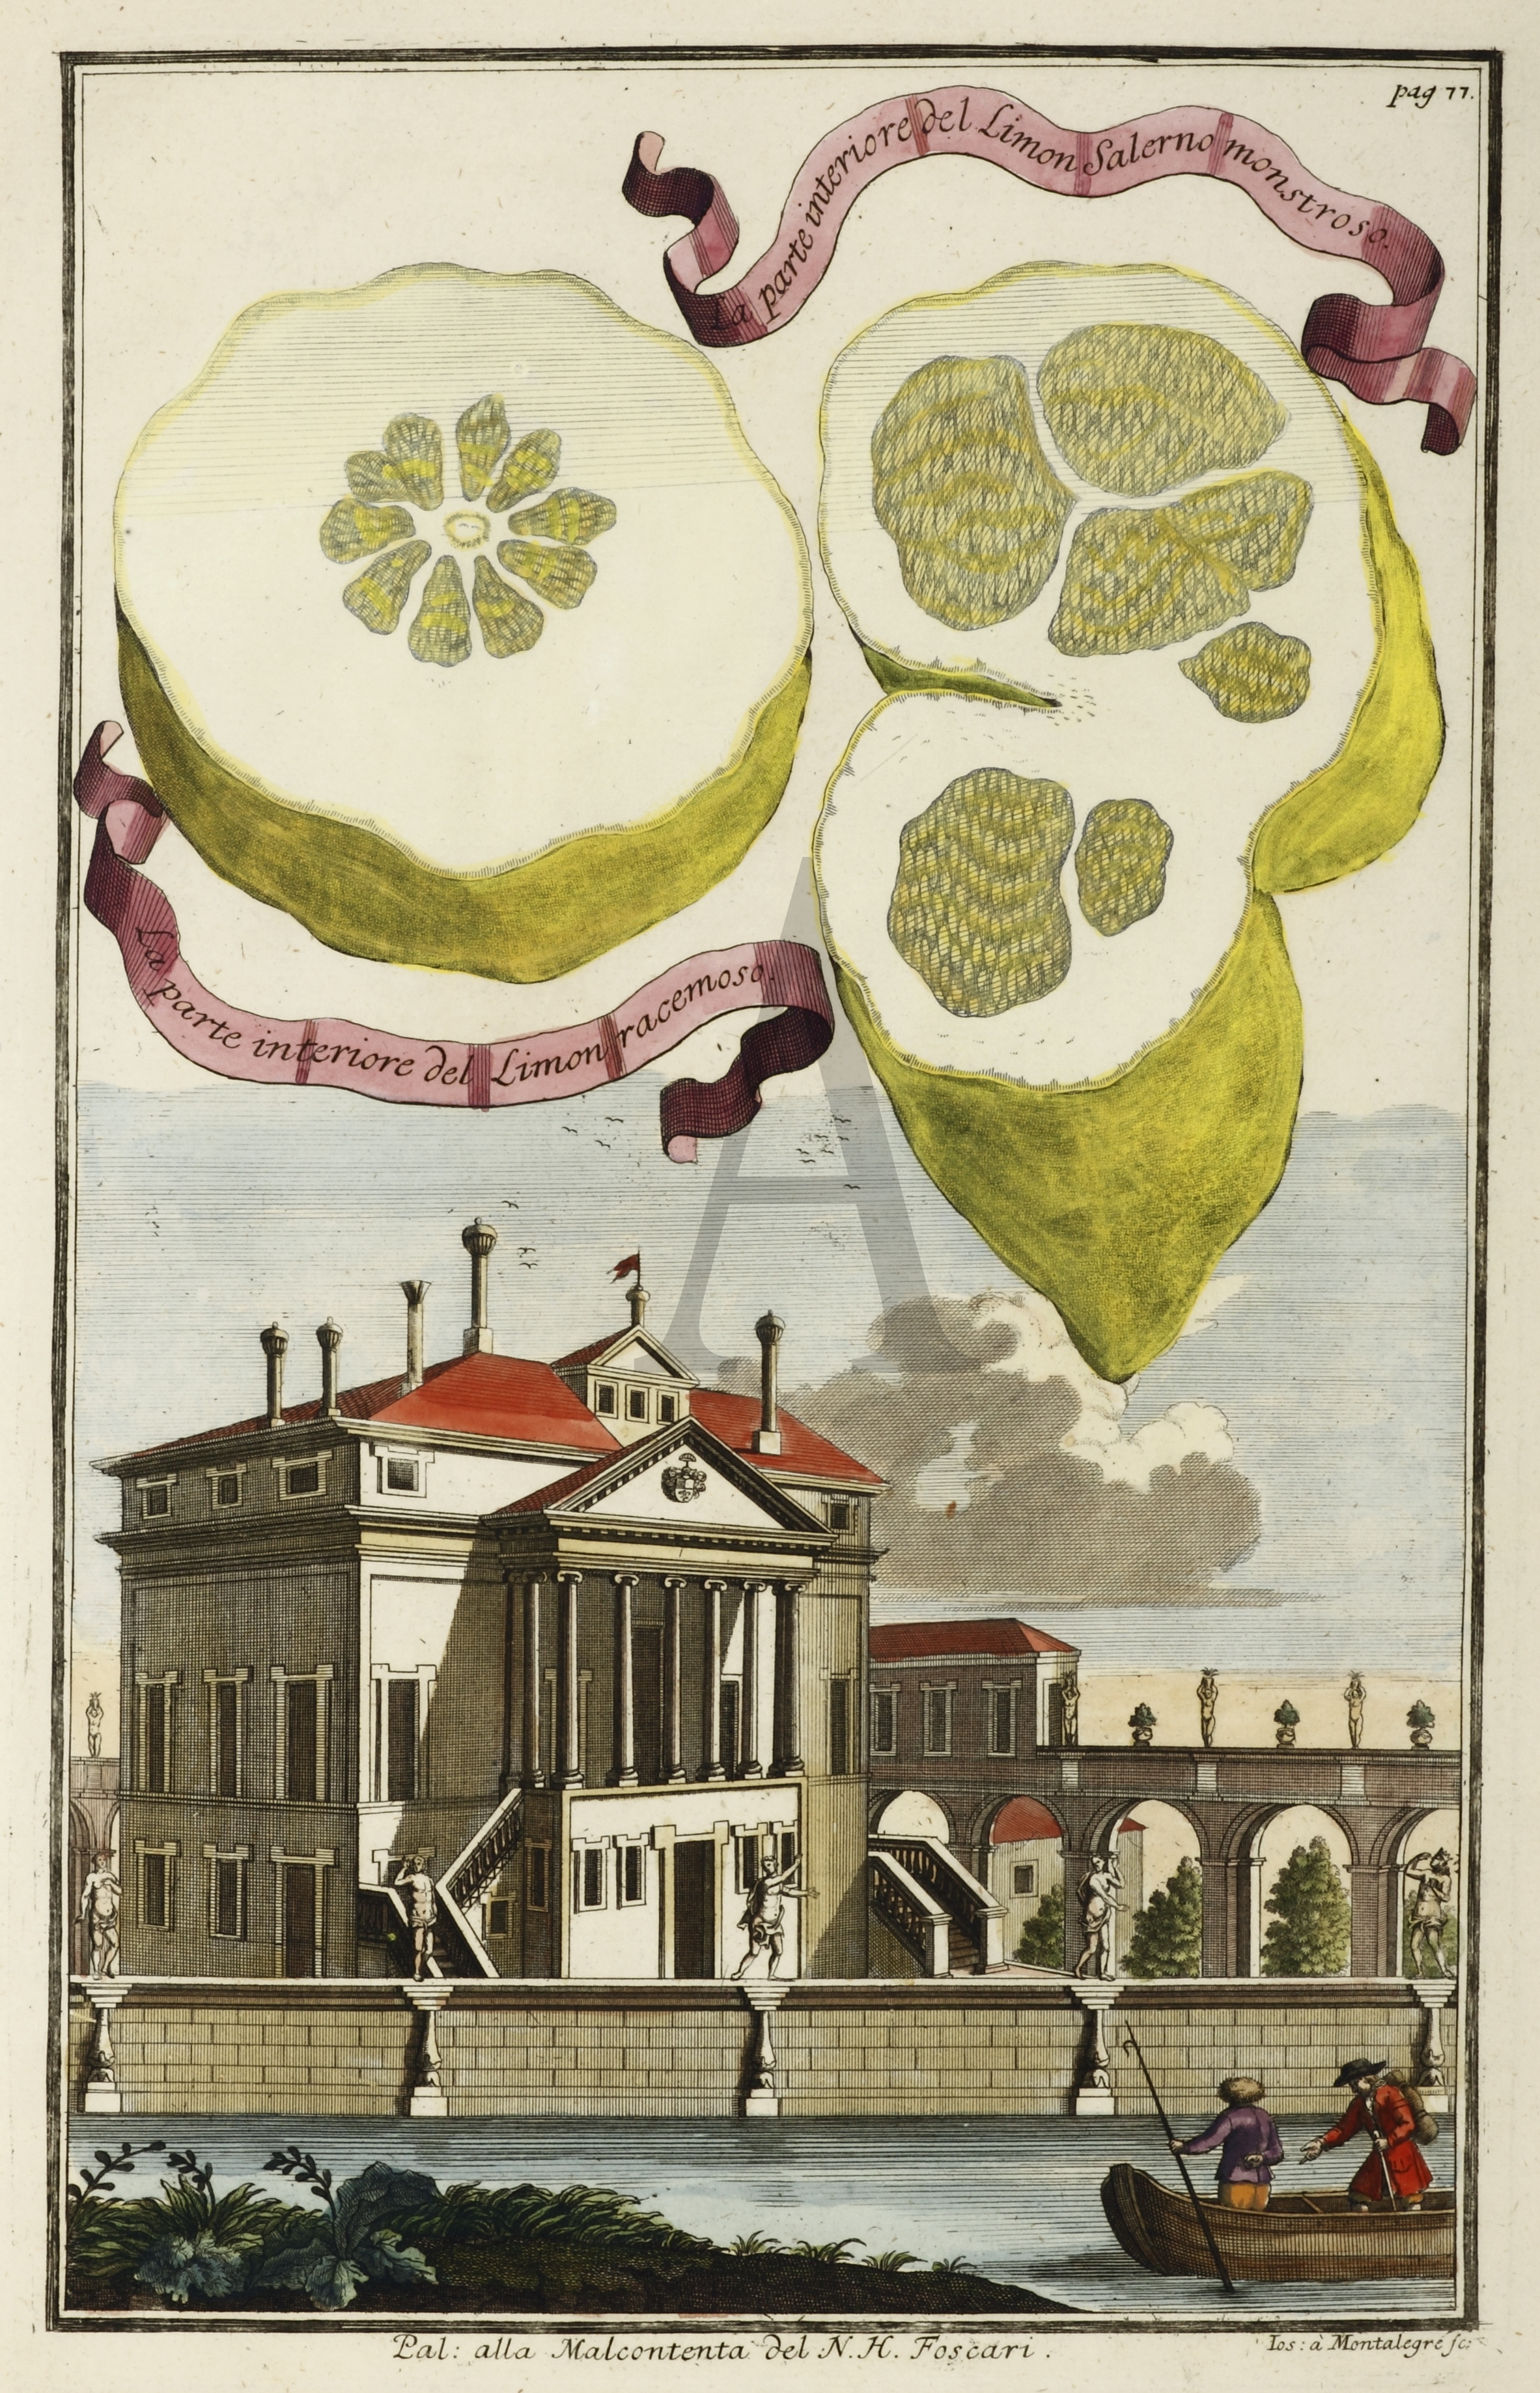 La parte interiore del Limon Salerno monstroso. La parte interiore del Limon racemoso. Pal: alla Malcontenta del N.H.Foscari. - Antique Print from 1708